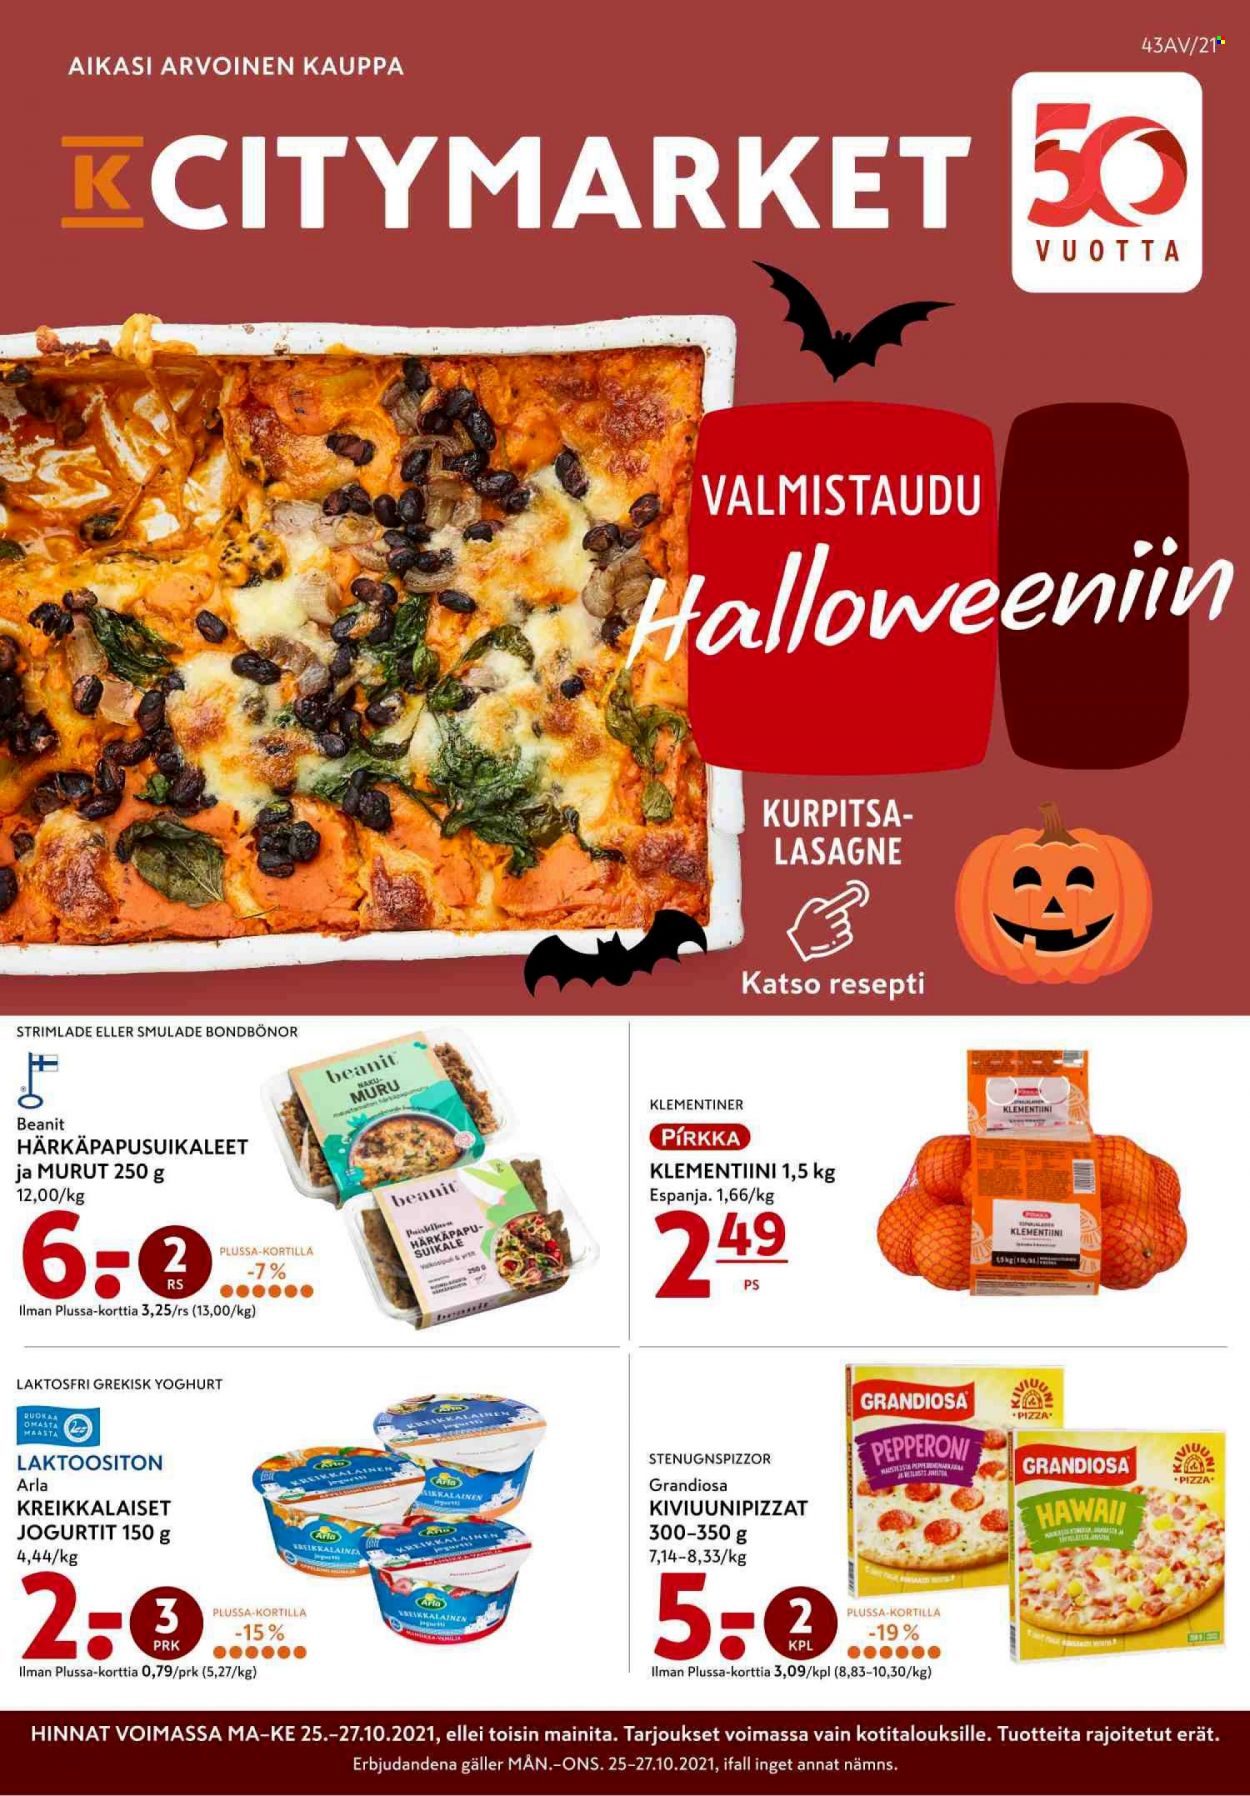 thumbnail - K-citymarket tarjoukset  - 25.10.2021 - 27.10.2021 - Tarjoustuotteet - kurpitsa, lasagne, Arla, jogurtit, pizza. Sivu 1.